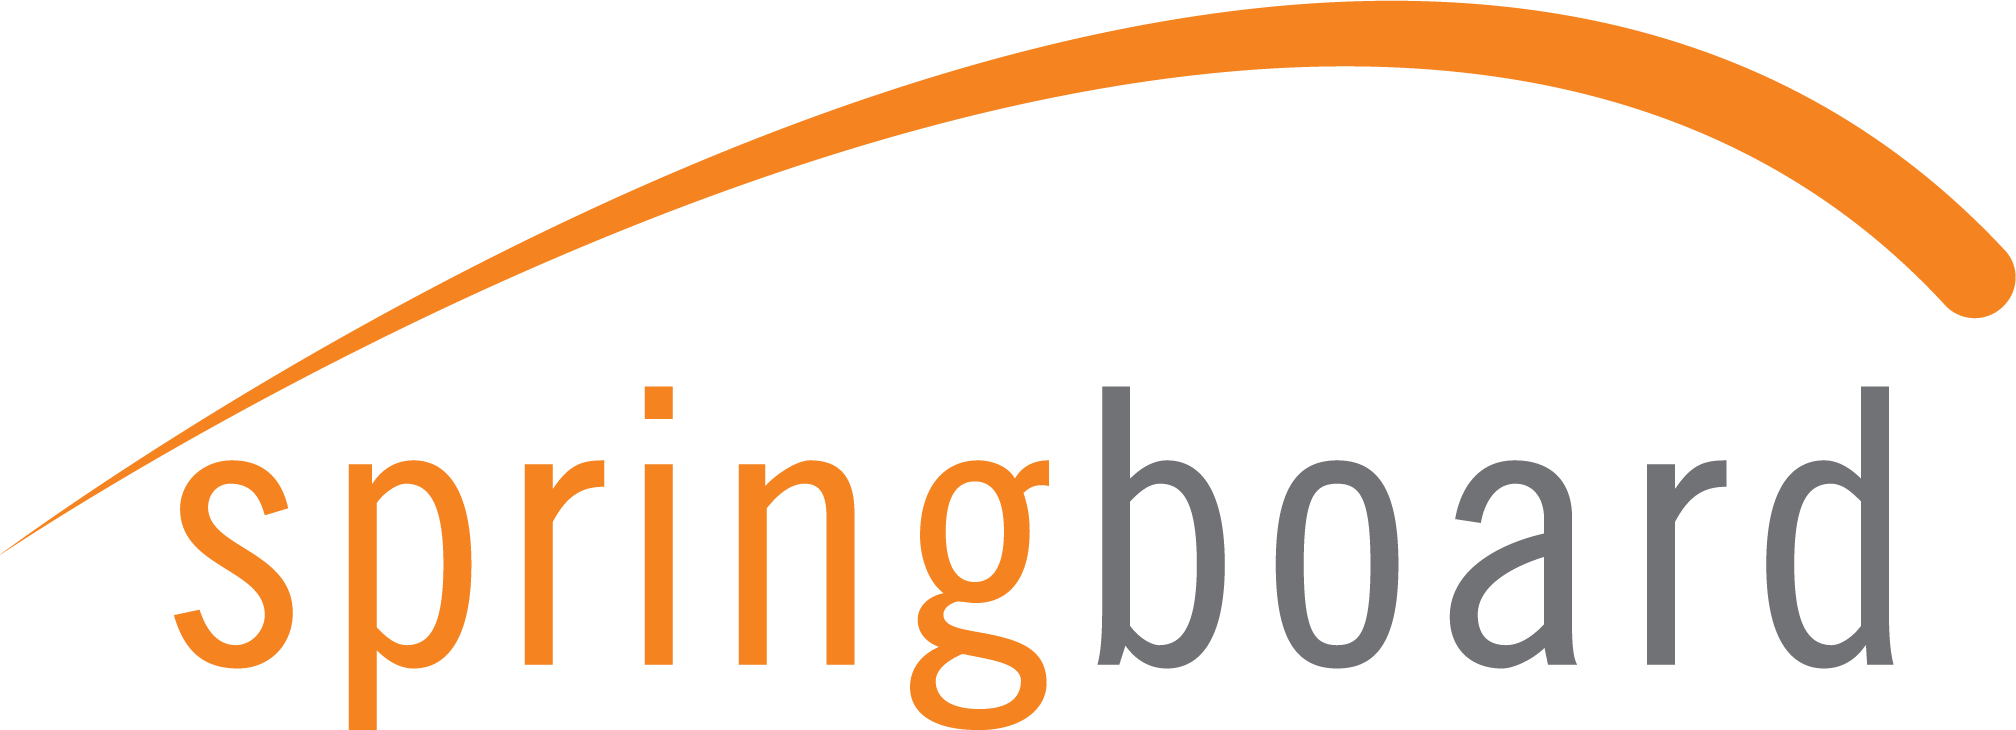 Springboard Logo - Springboard